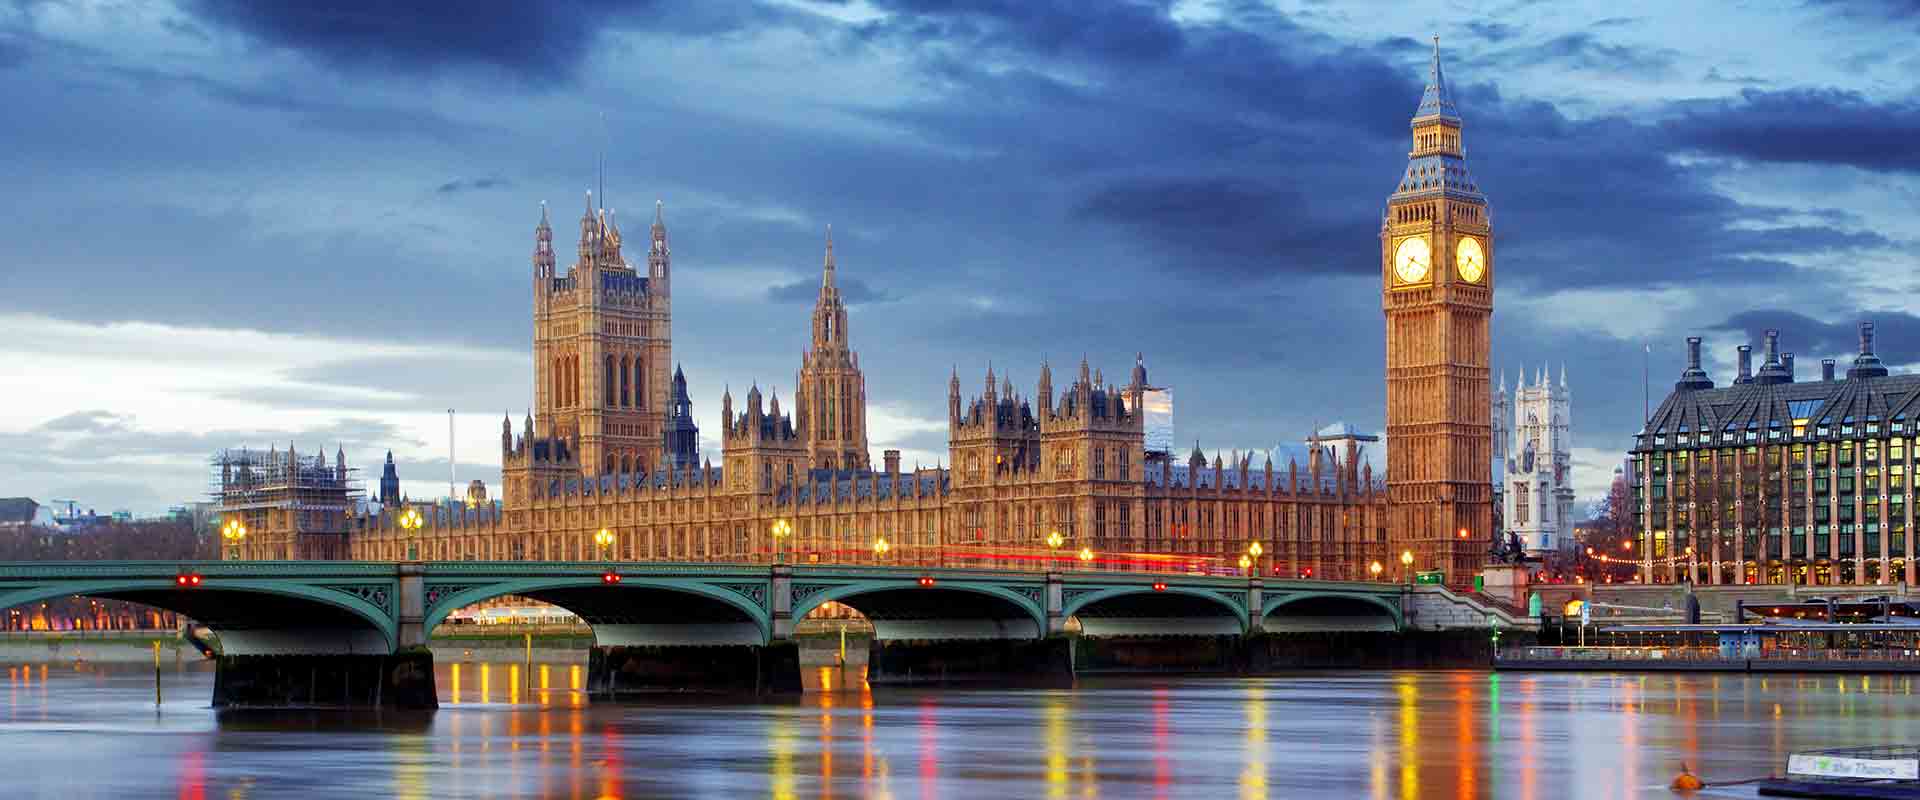 felix-reisen-busreisen-stage-grossbritannien-london-big-ben-and-houses-of-parliament-62913588.jpg